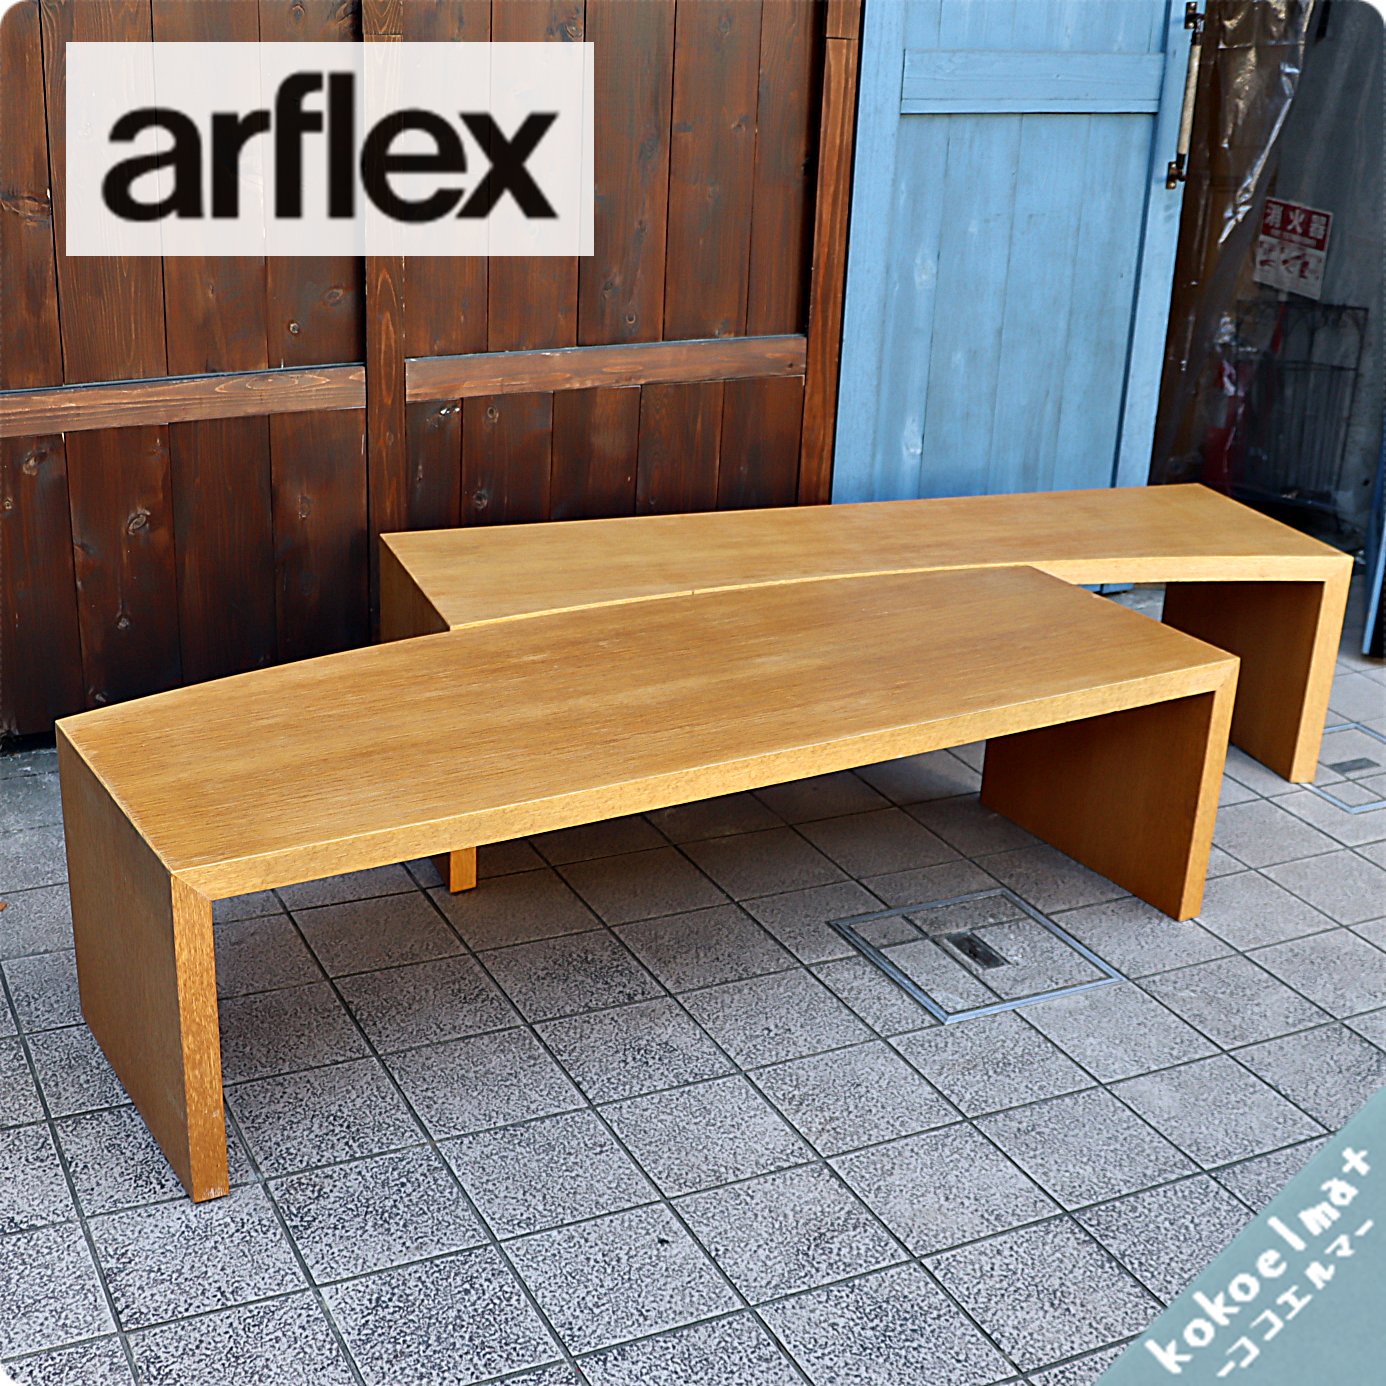 arflex アルフレックス PONTE ポンテ センターテーブル - 座卓・ちゃぶ台